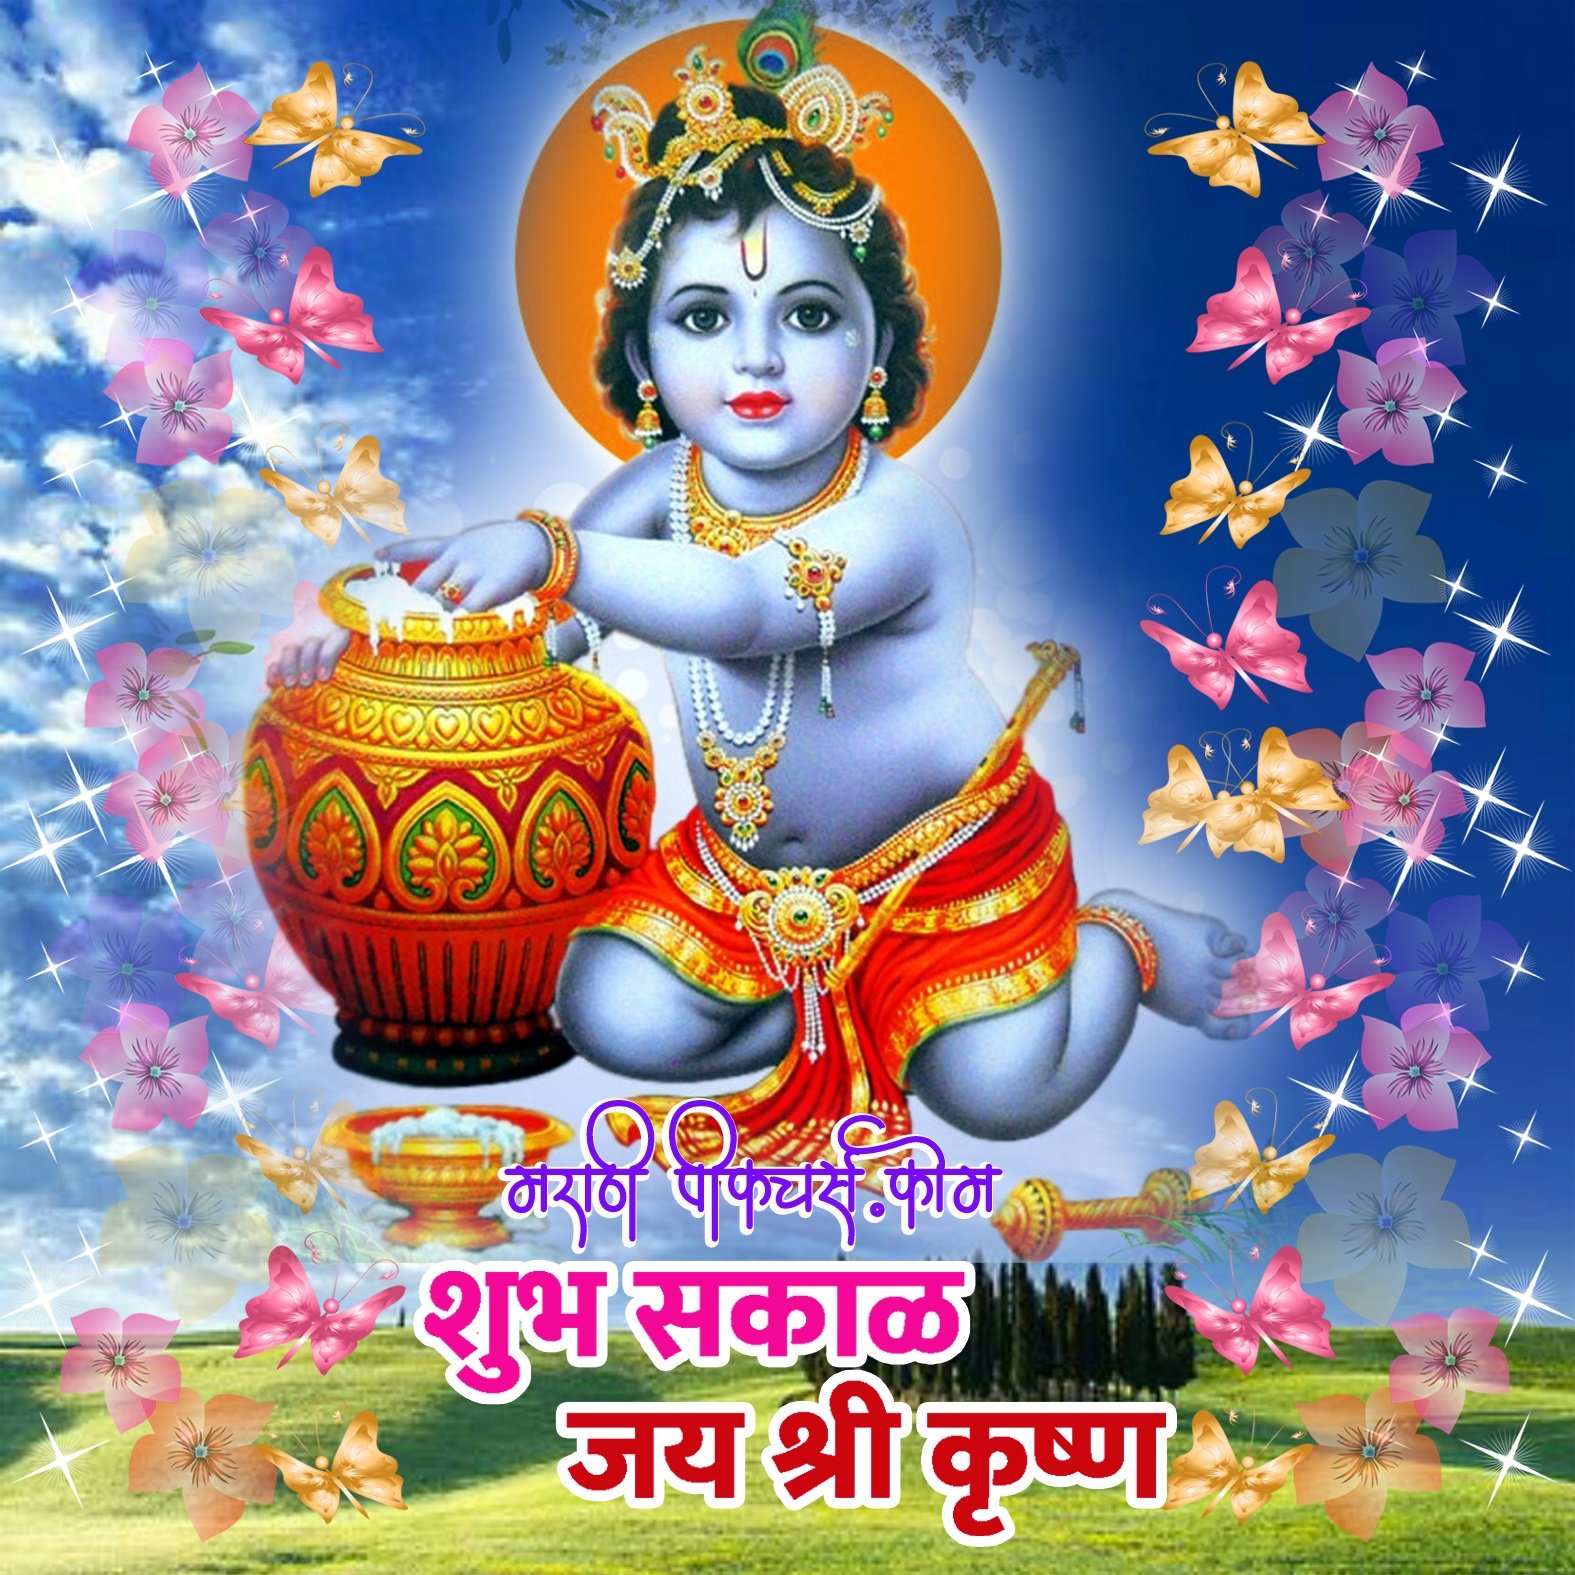 Shubh Sakal Jai Shri Krishna